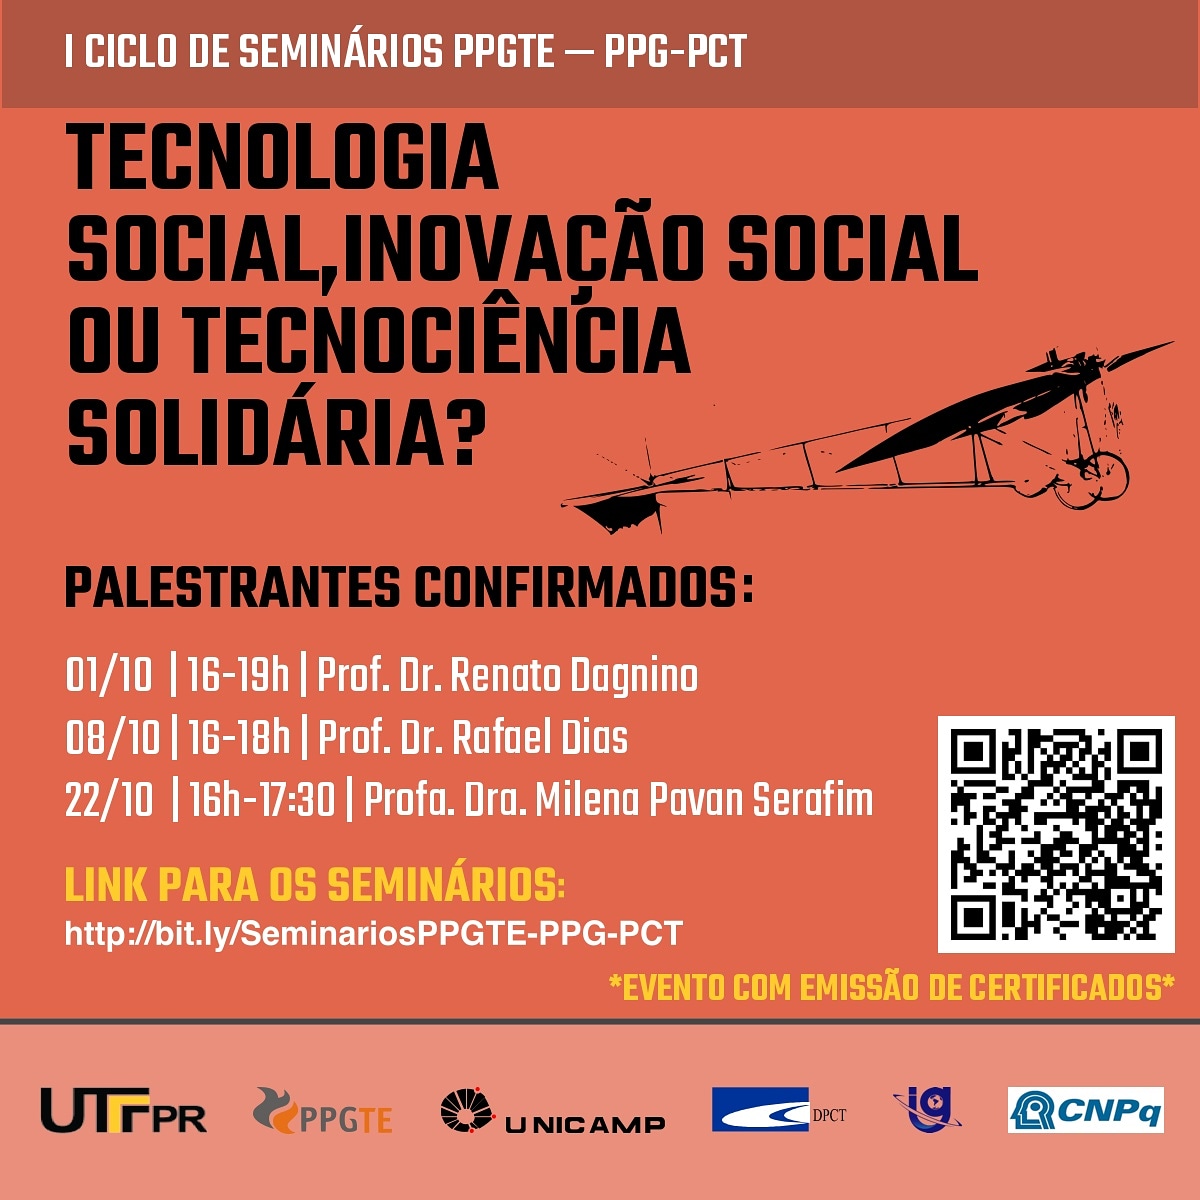 [Evento] I Ciclo de Seminários PPGTE – PPG – PCT: Tecnologia Social, Inovação Social ou Tecnociência Solidária?